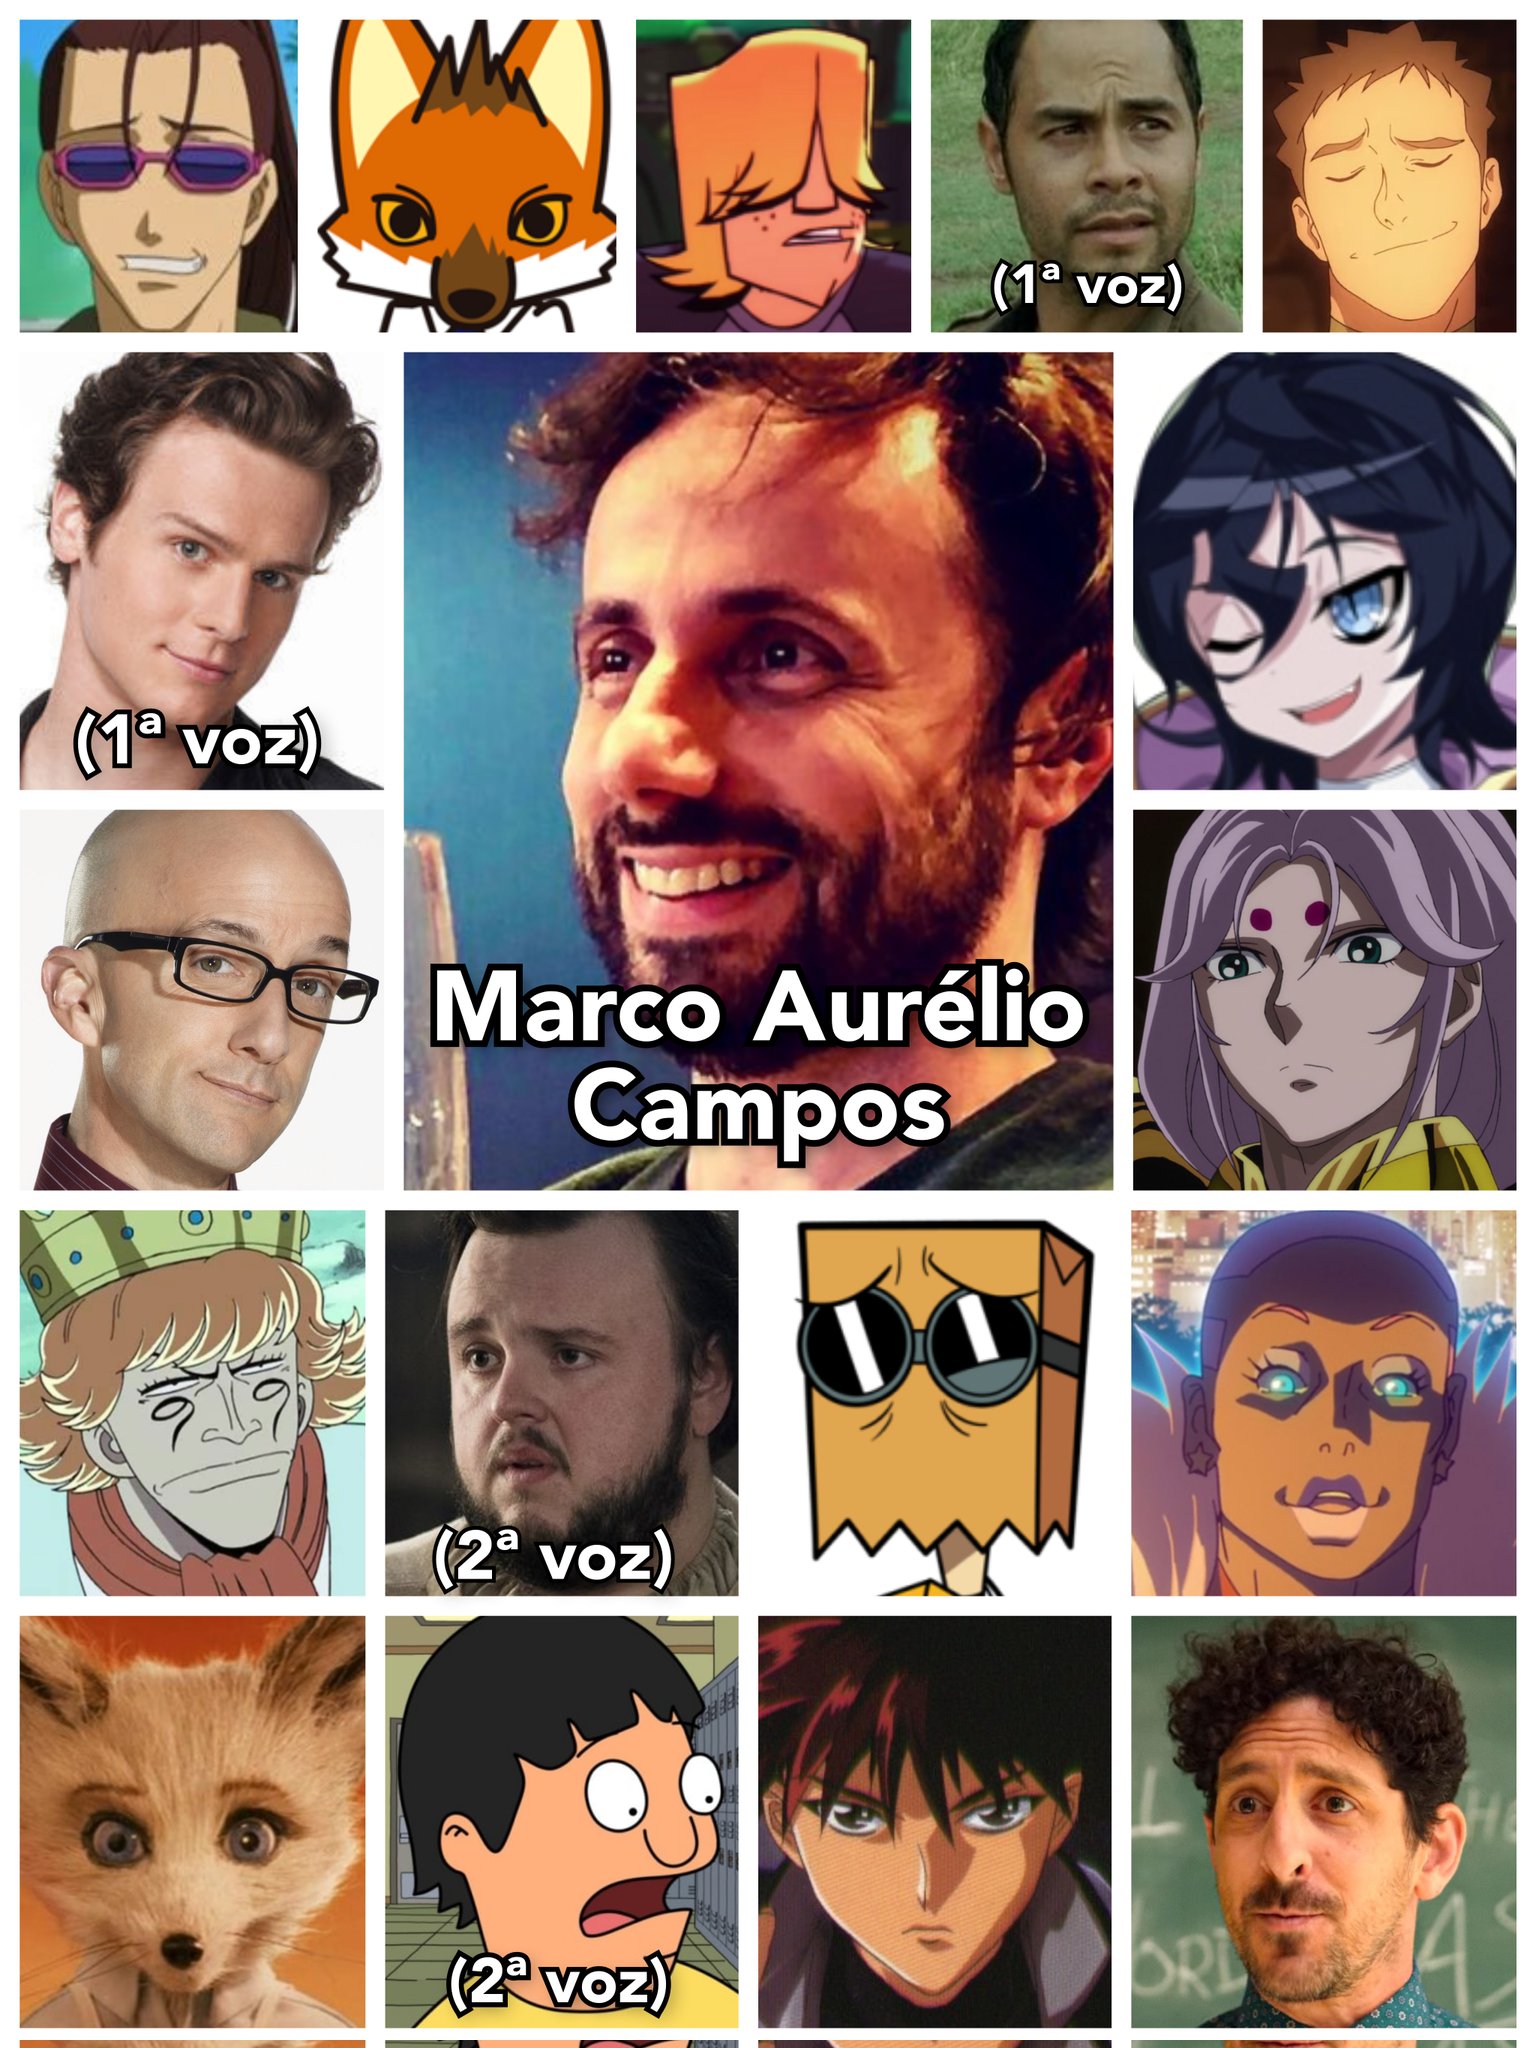 Rio Anime Club - O dublador Marcelo Campos é presença confirmada no  #RAC10anos!! Conhecido pelas vozes de grandes personagens de anime como Yugi  em Yu Gi Oh, Edward Elric em Full Metal